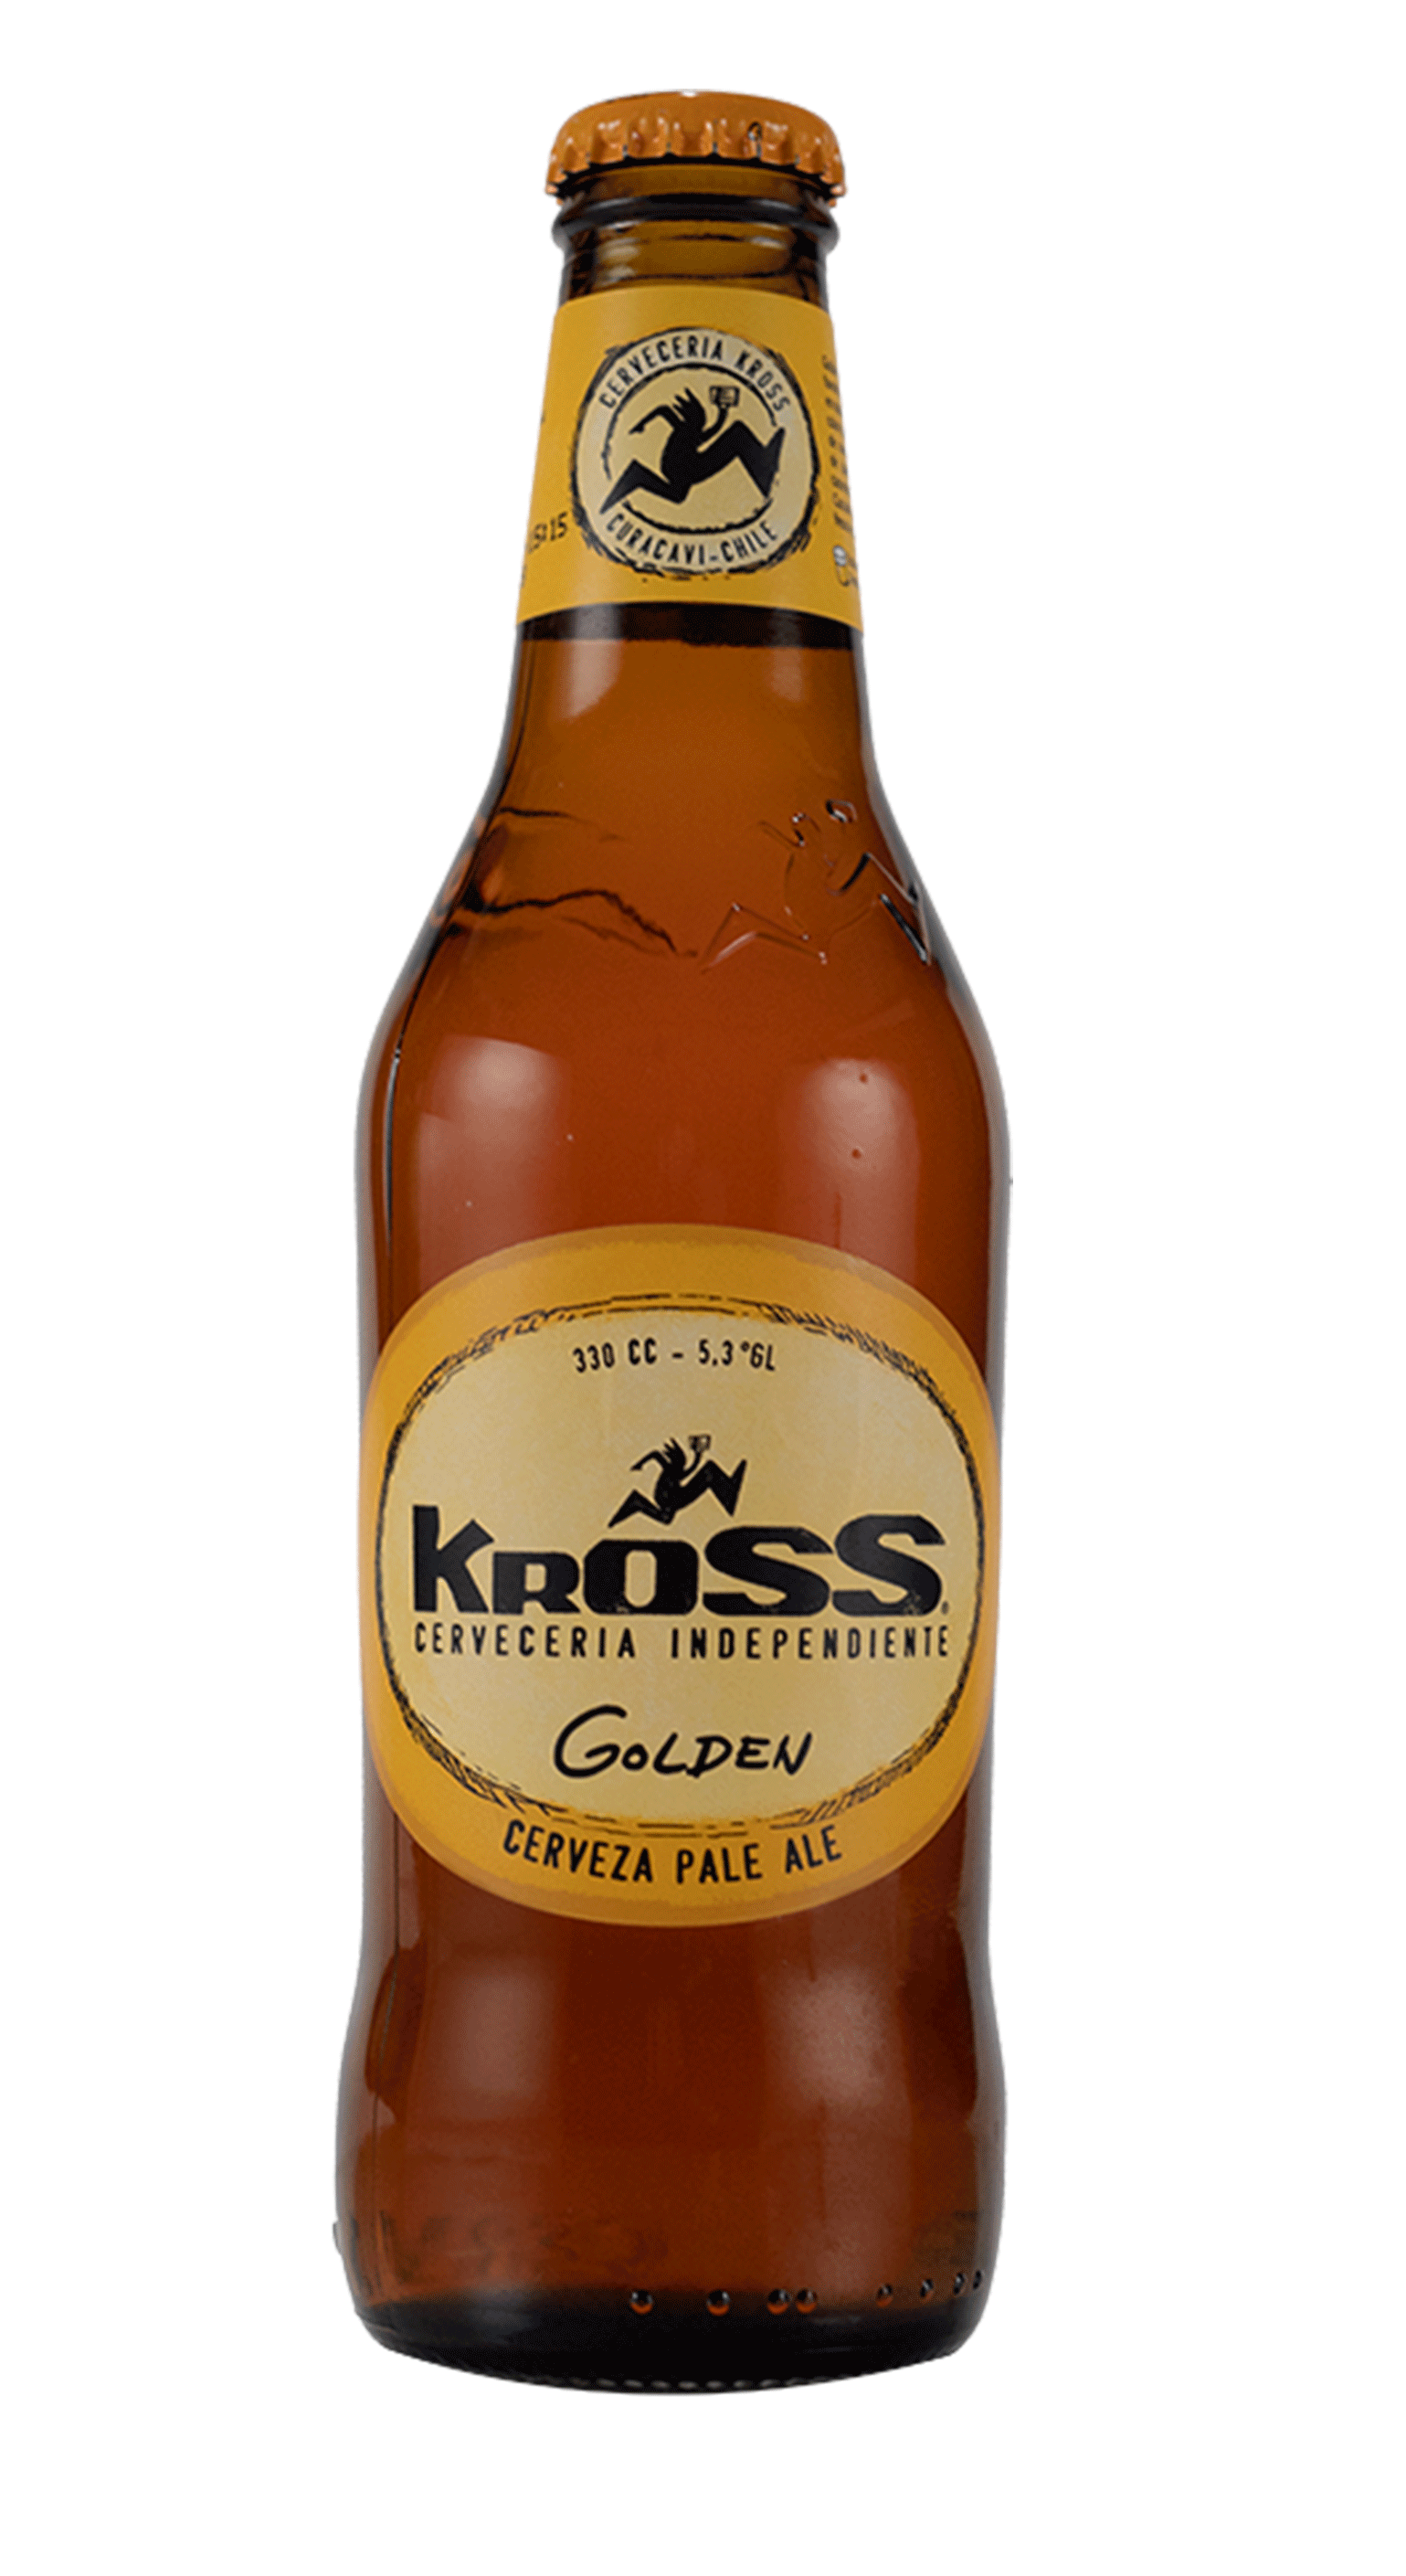 Cervezas Kross Clasicas